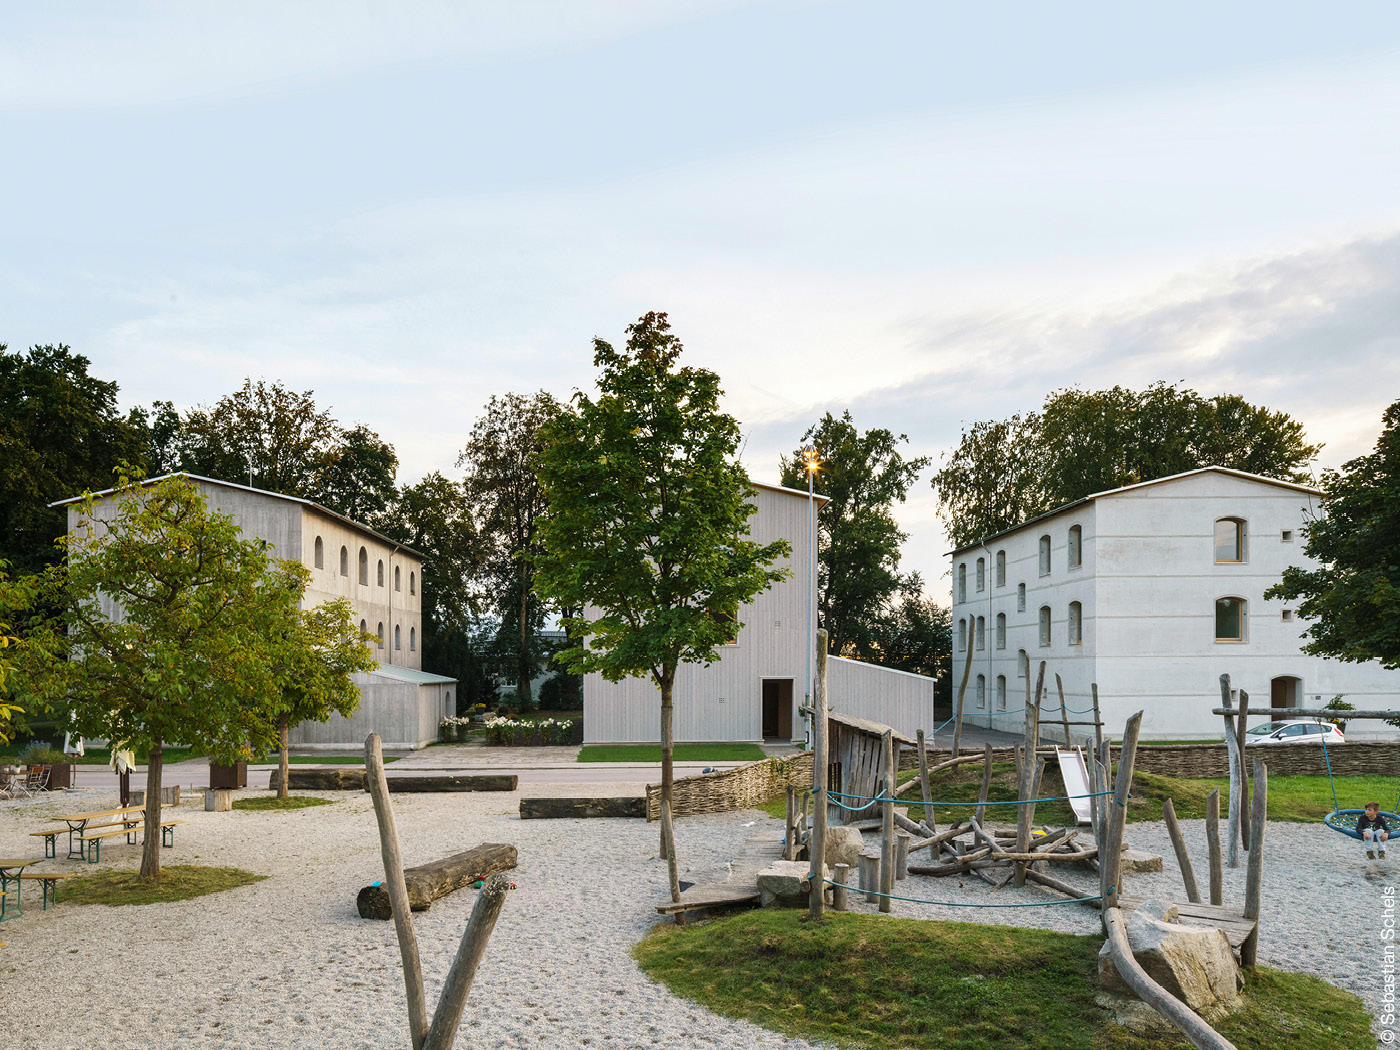 Forschunghäuser in Bad Aibling mit Spielplatz und Bäumen